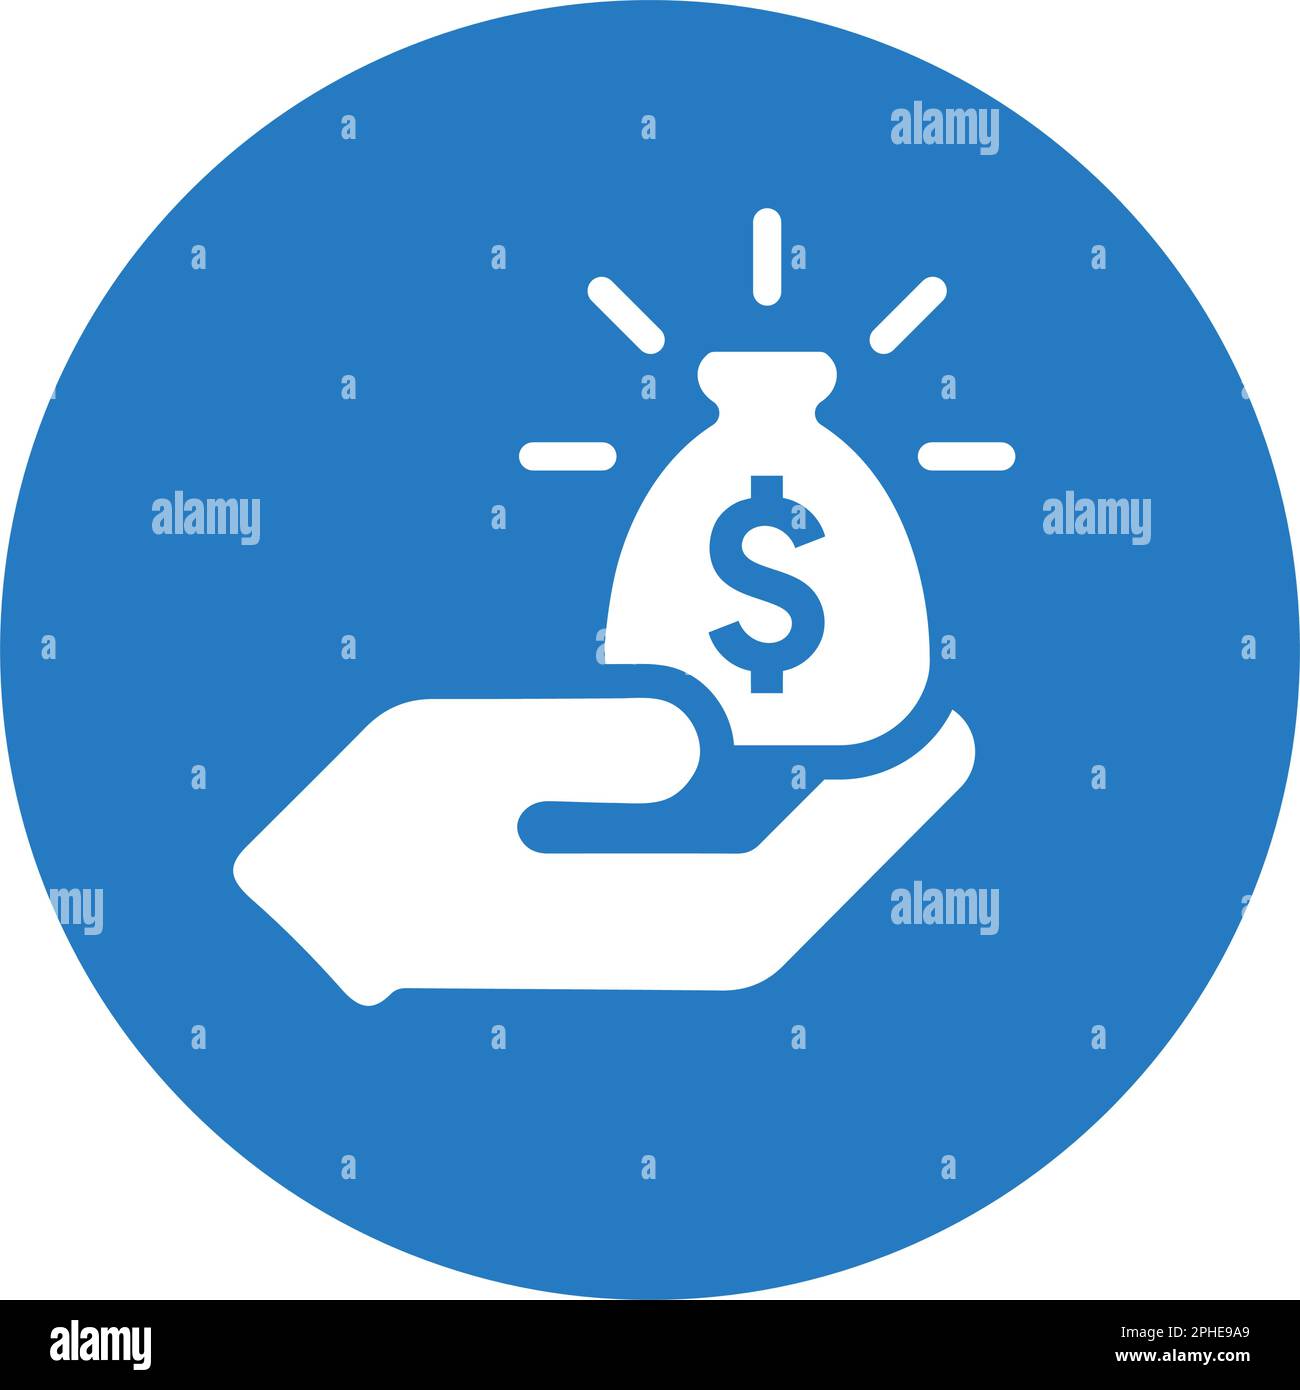 Symboldesign für Geld im Bestand – gut organisiertes und bearbeitbares Vektordesign für kommerzielle Zwecke, Printmedien, Web oder andere Designprojekte. Stock Vektor